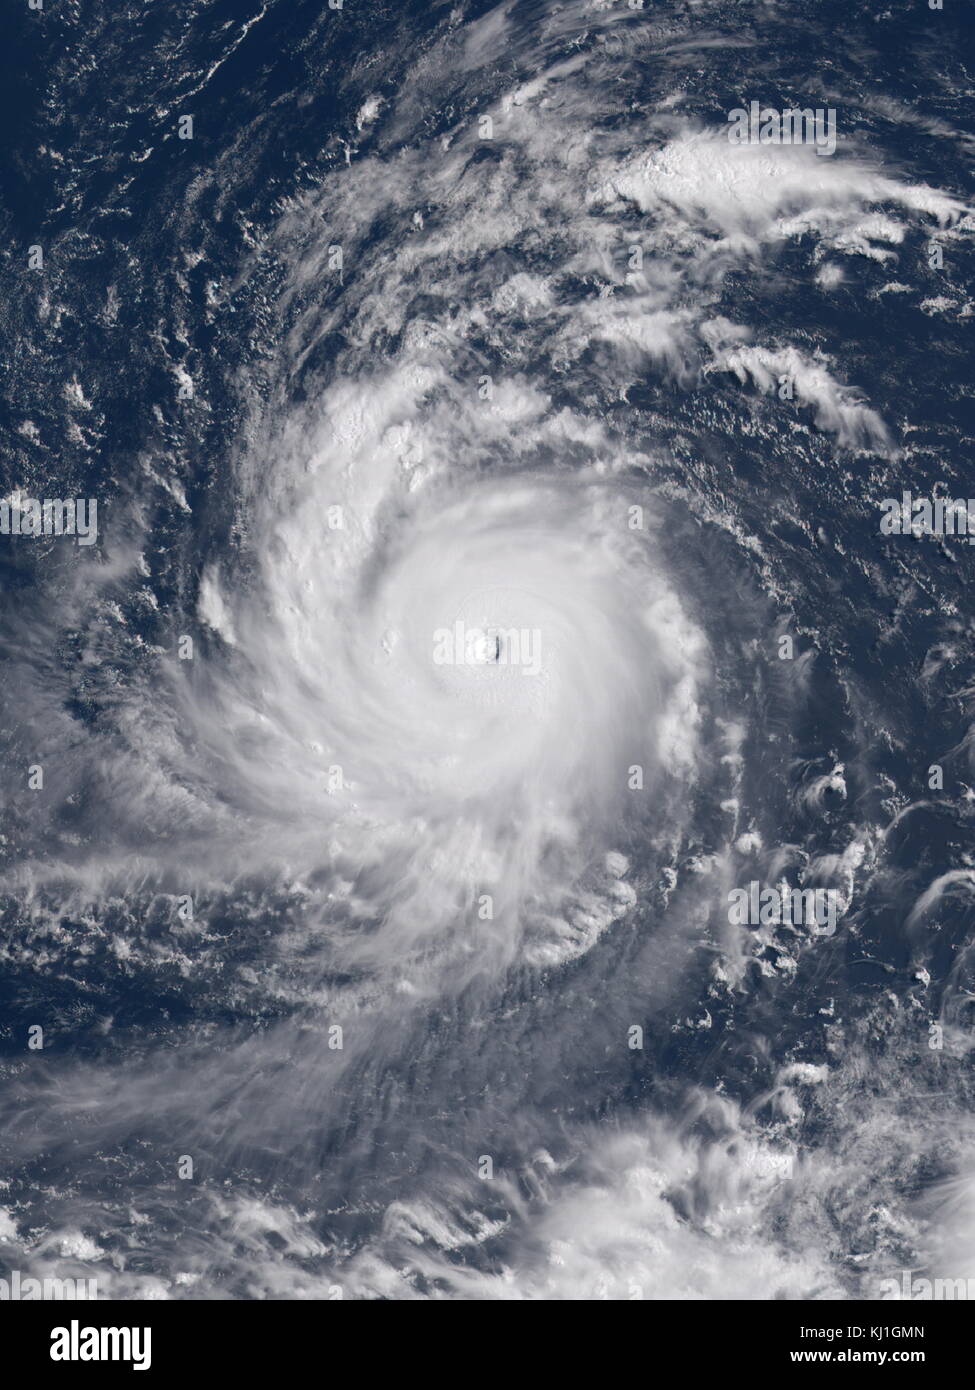 El tifón Soudelor, conocido en Filipinas como tifón Hanna, fue el segundo más intenso ciclón tropical en todo el mundo en 2015 así como el ciclón tropical más fuerte de la temporada de tifones del Pacífico 2015. Soudelor tuvo graves repercusiones en las Islas Marianas del Norte, Taiwán y China oriental, resultando en 40 muertes confirmadas Foto de stock